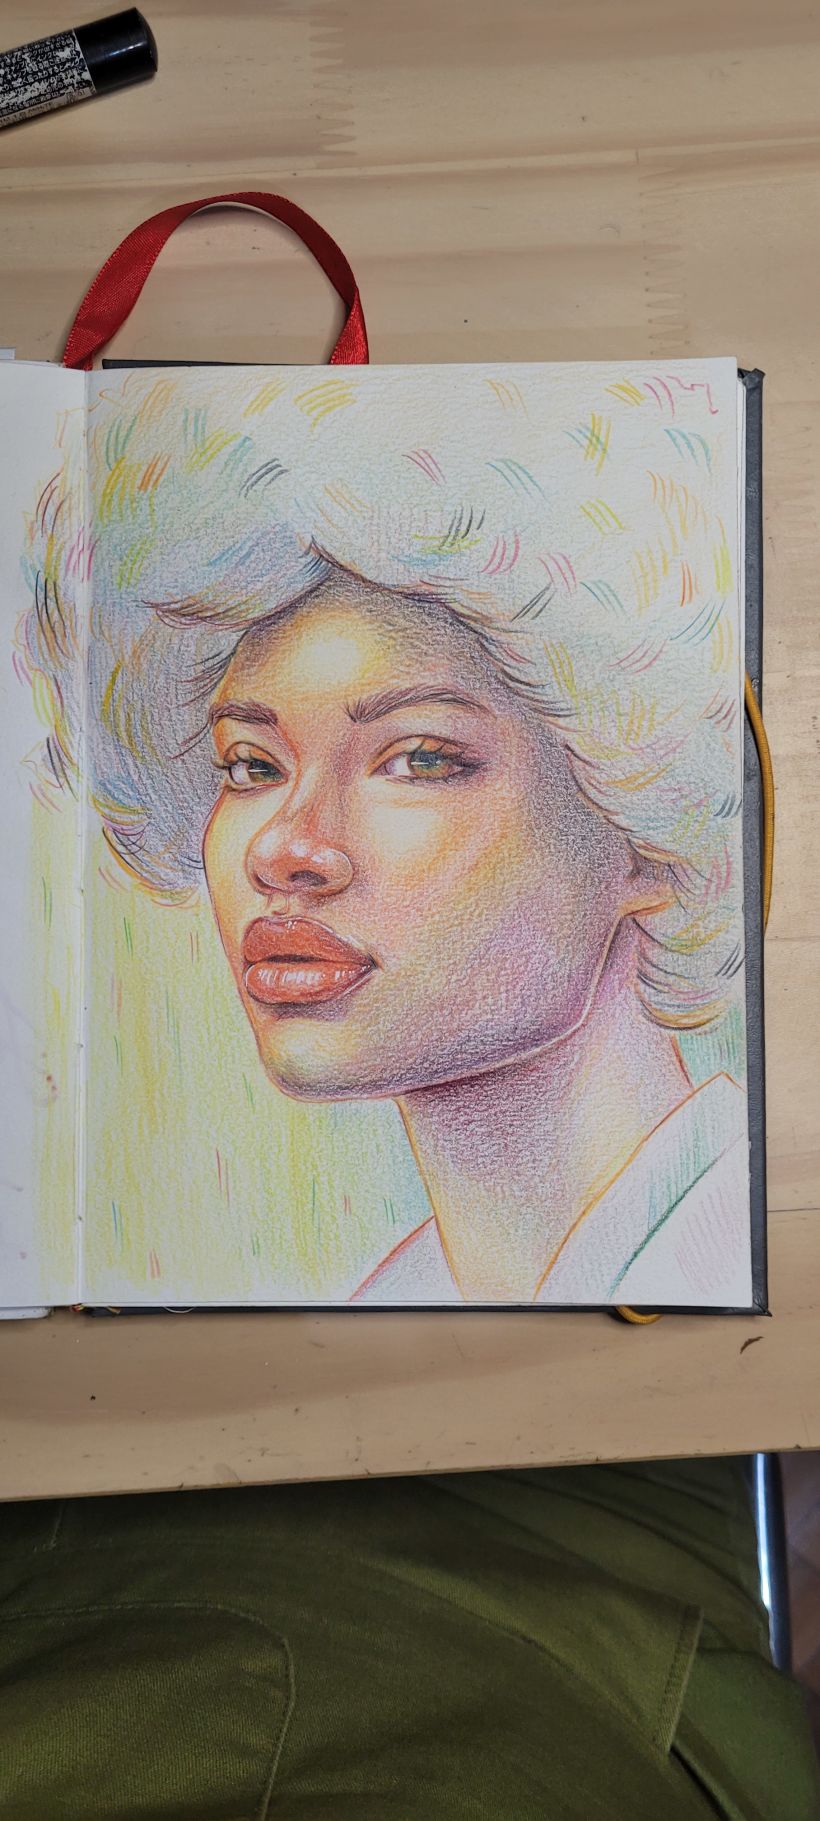 Meu projeto do curso: Desenho de retratos vibrantes com lápis de cor 7